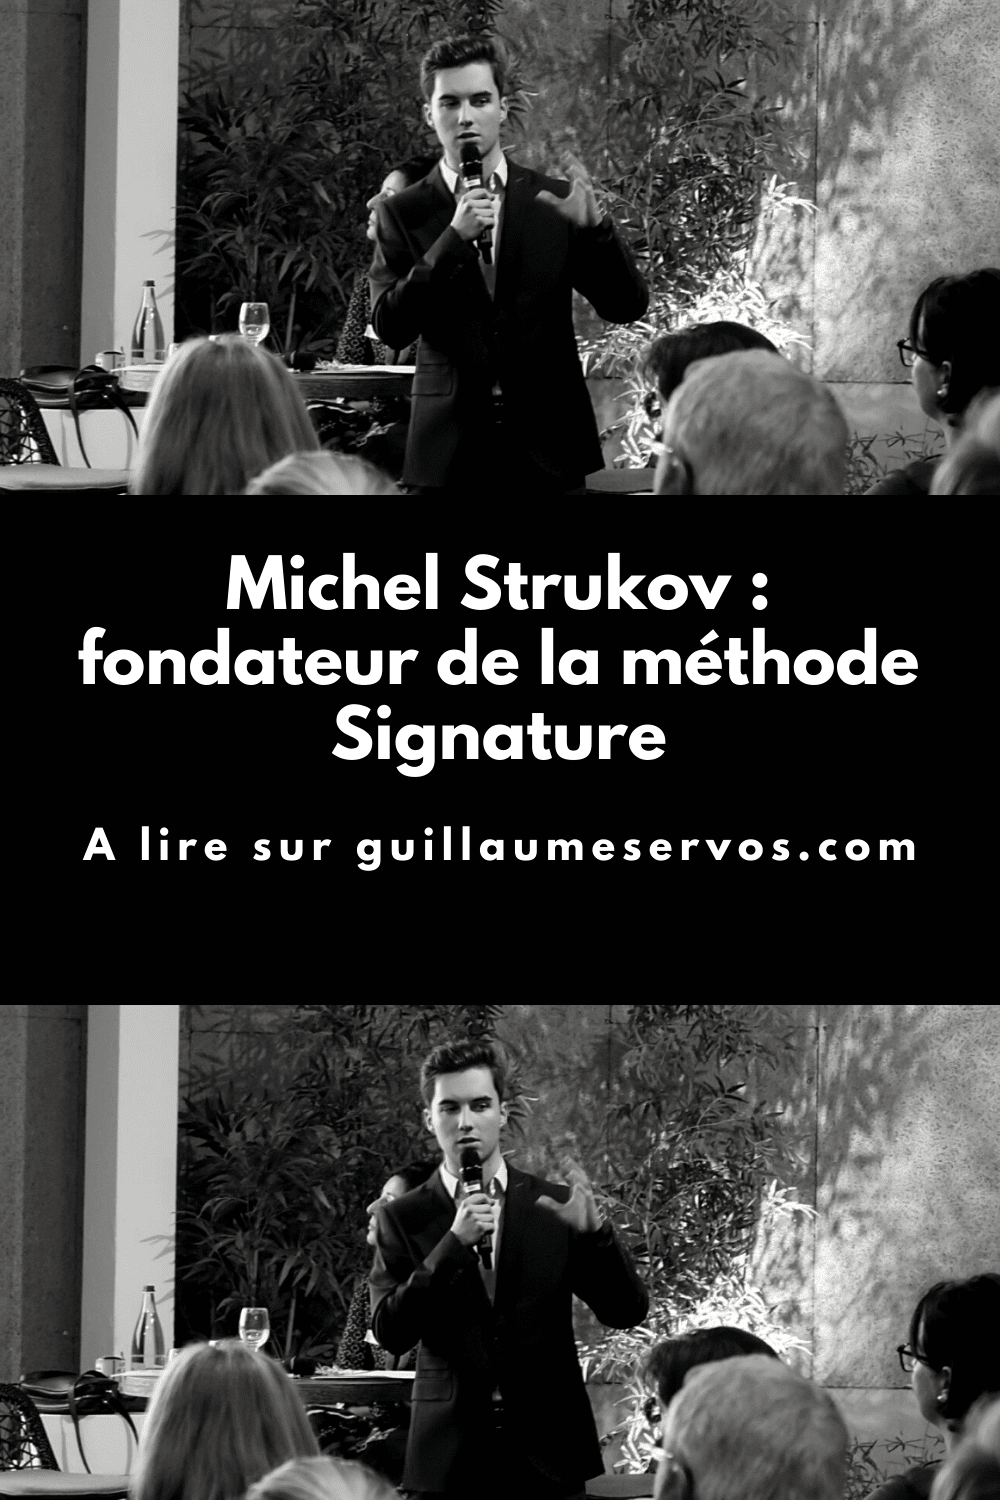 Découvre mon interview avec Michel Strukov, consultant et fondateur de la méthode Signature. Son rapport à l'entrepreneuriat, aux réseaux sociaux et au voyage.